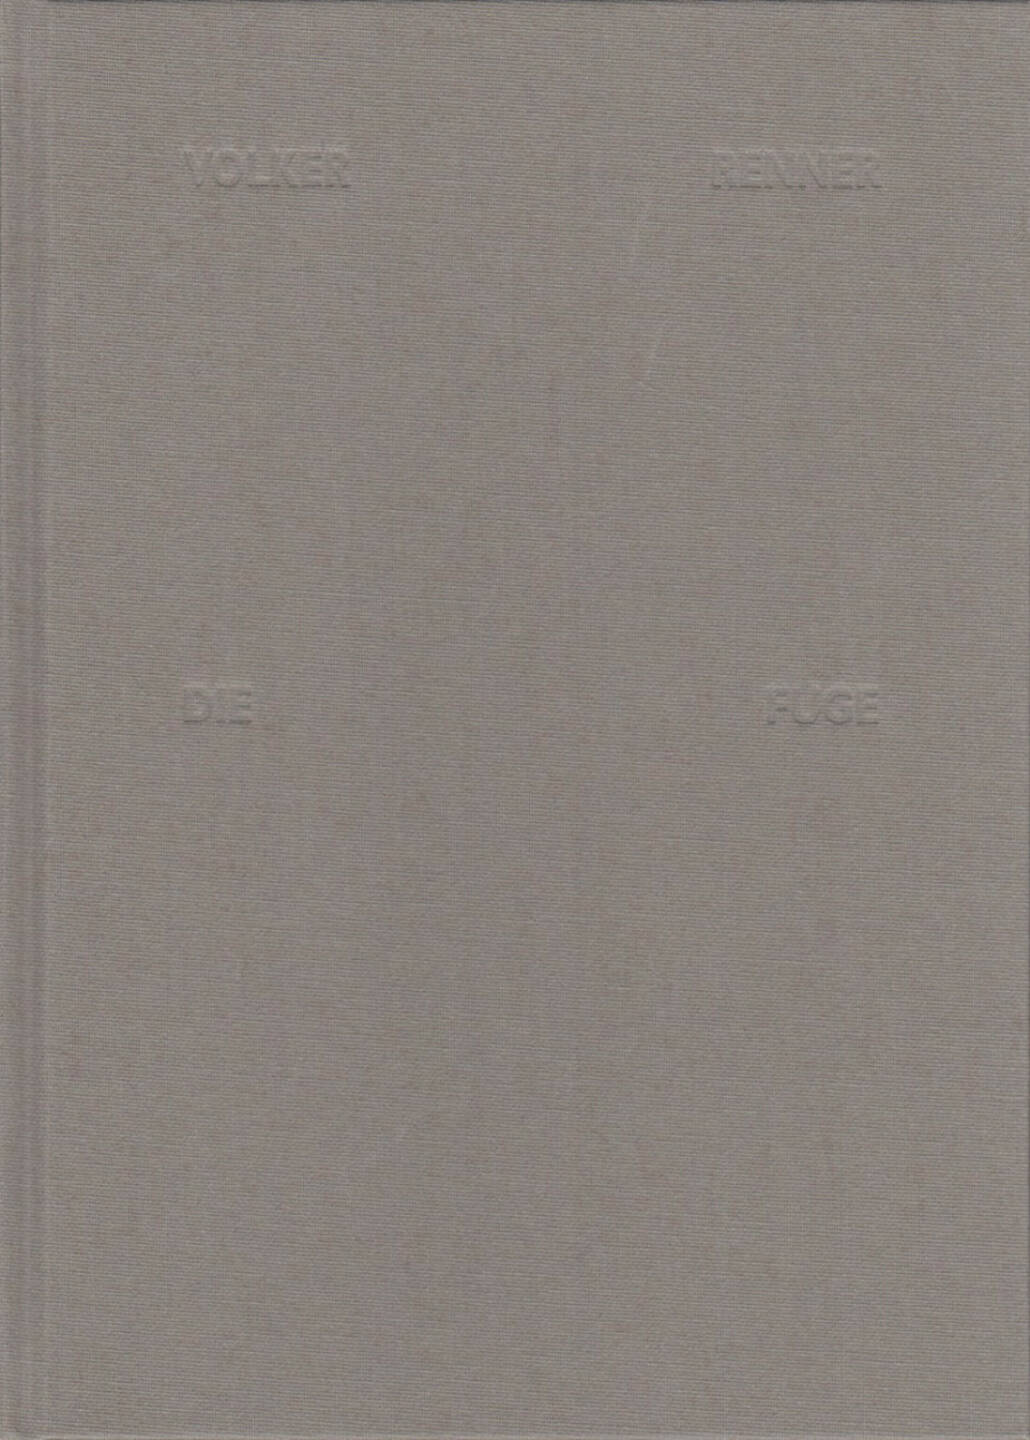 Volker Renner - Die Fuge, Textem Verlag 2013, Cover - http://josefchladek.com/book/volker_renner_-_die_fuge